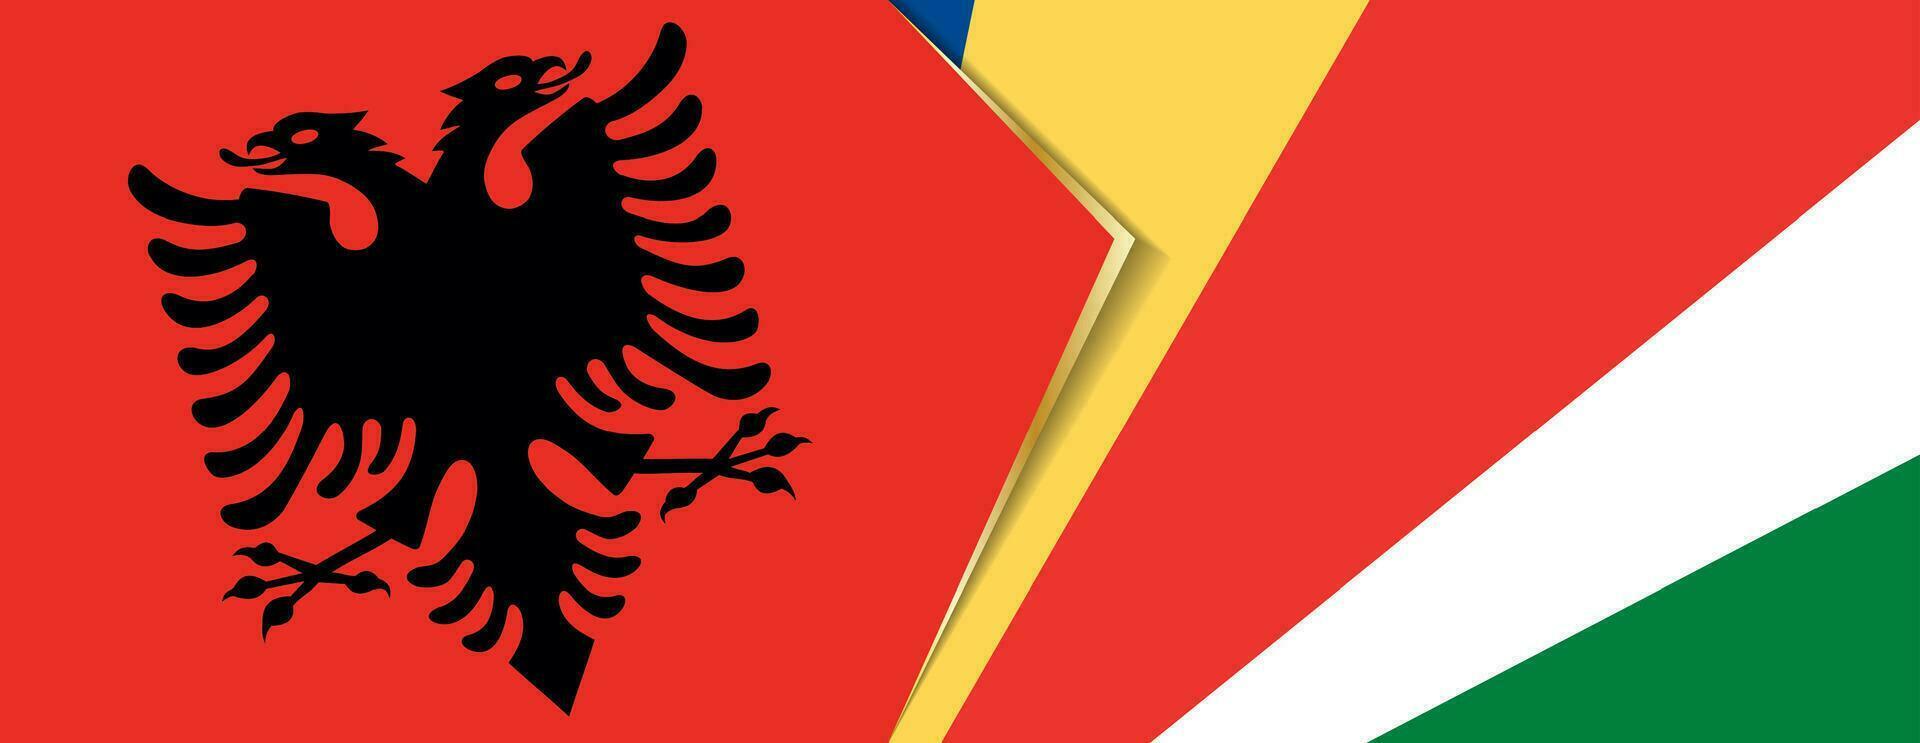 albania och Seychellerna flaggor, två vektor flaggor.